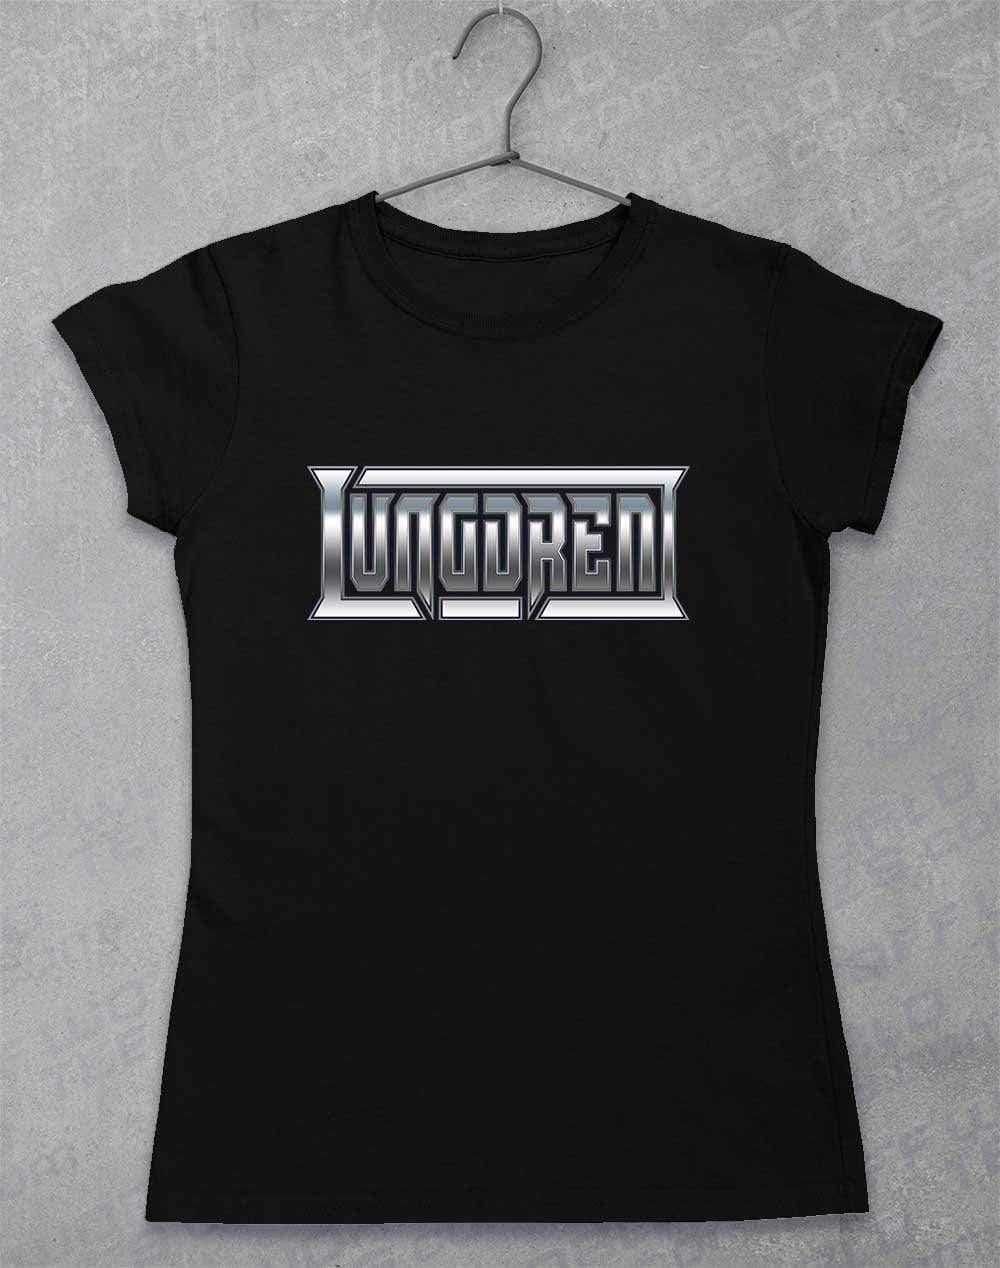 LUNGDREN Chrome Logo - Womens T-Shirt 8-10 / Black  - Off World Tees